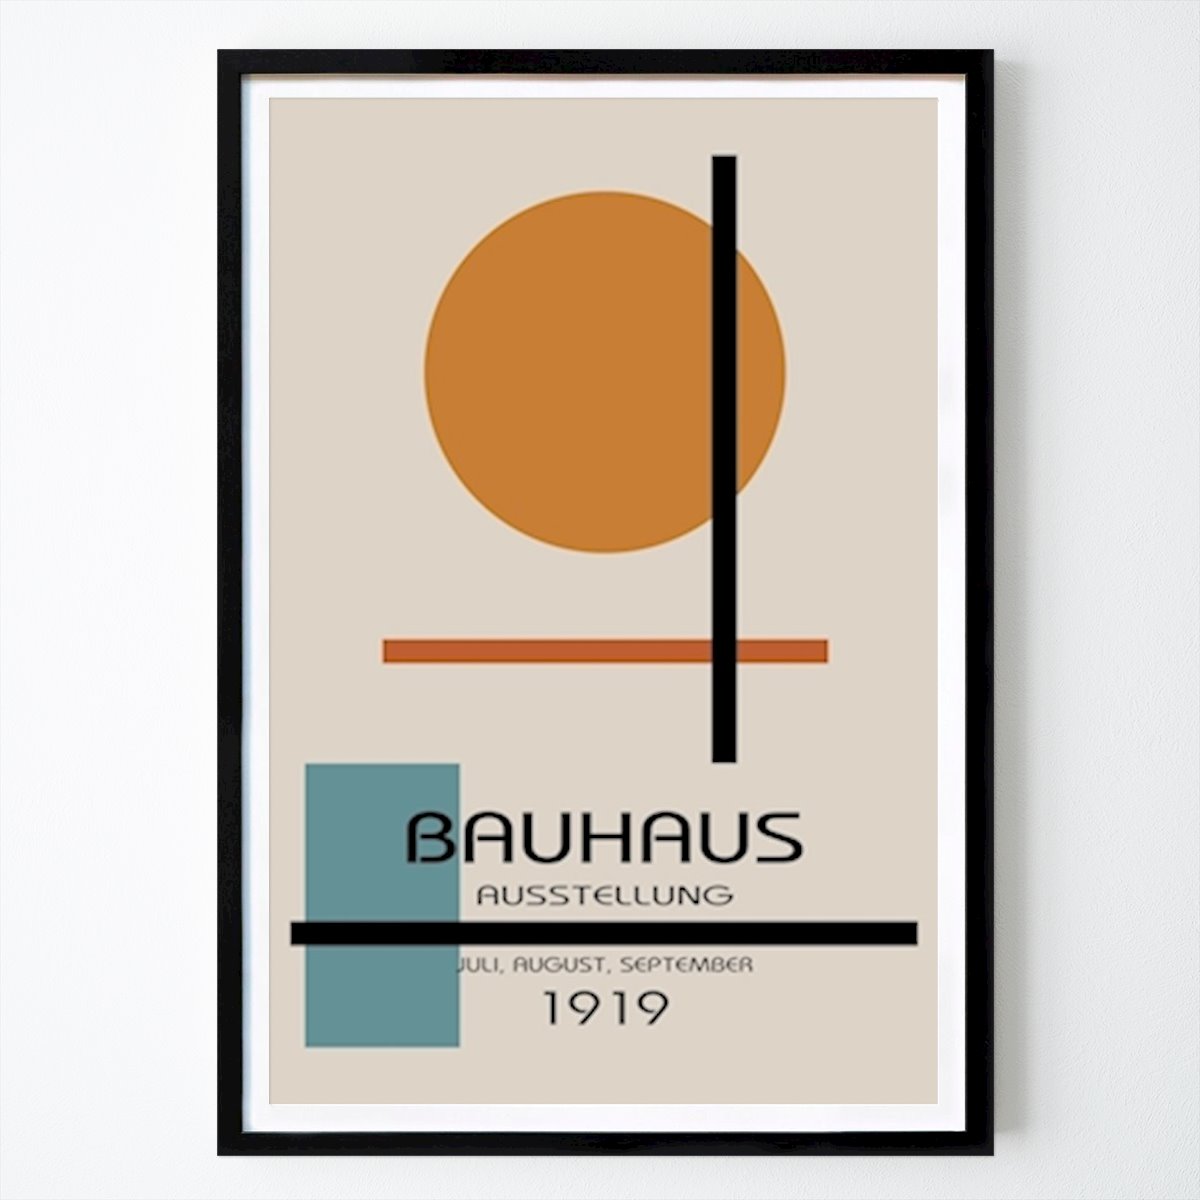 Poster: Bauhaus Ausstellung Poster von William Gustafsson von Printler